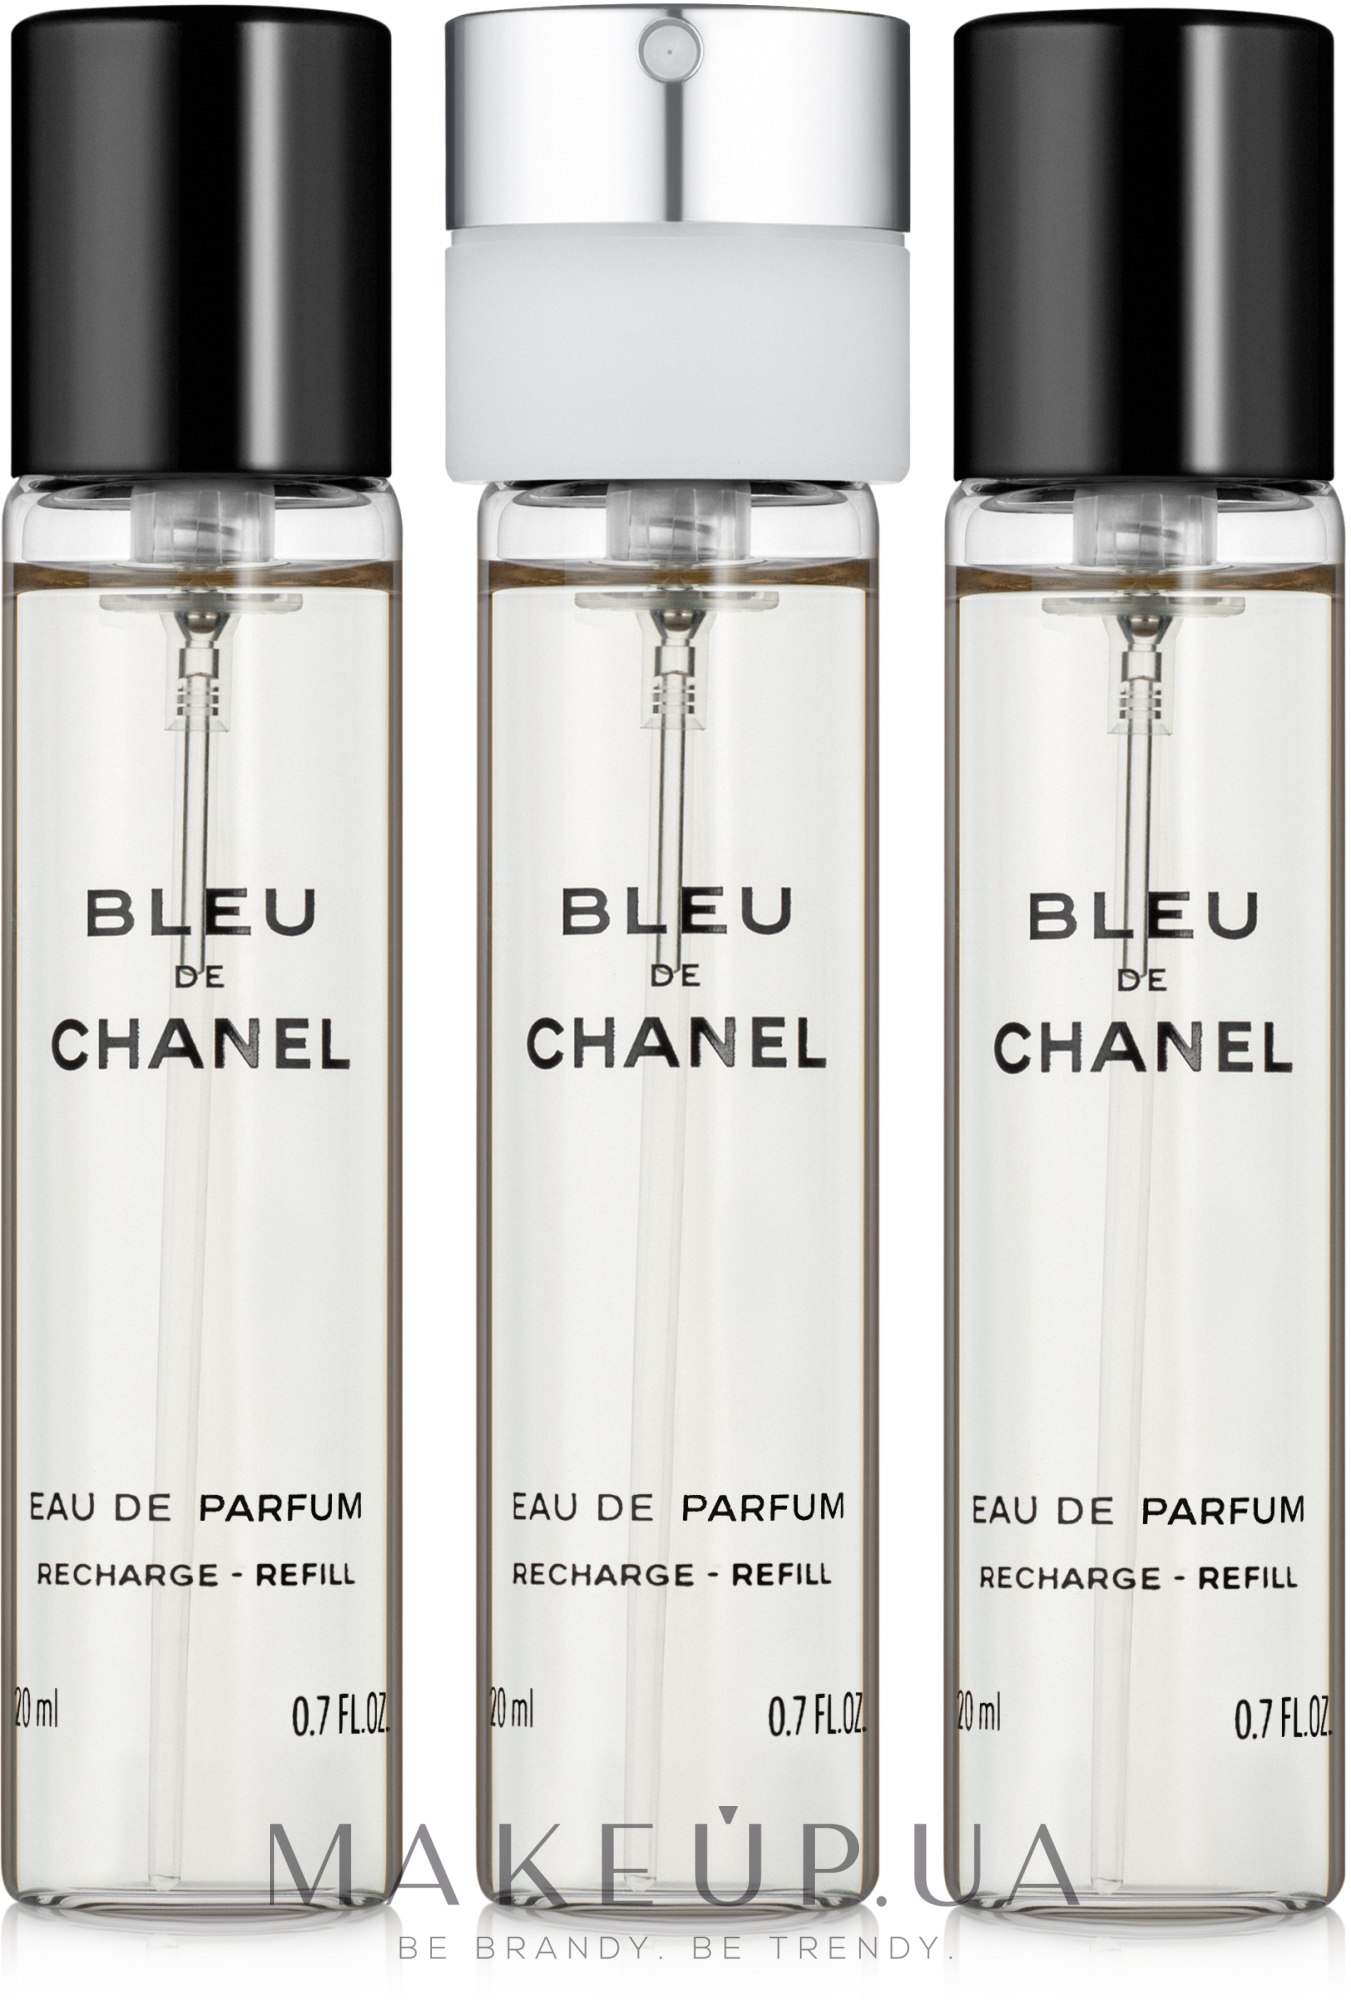 Chanel Bleu de Chanel - Парфюмированная вода (сменный блок) — фото 3x20ml